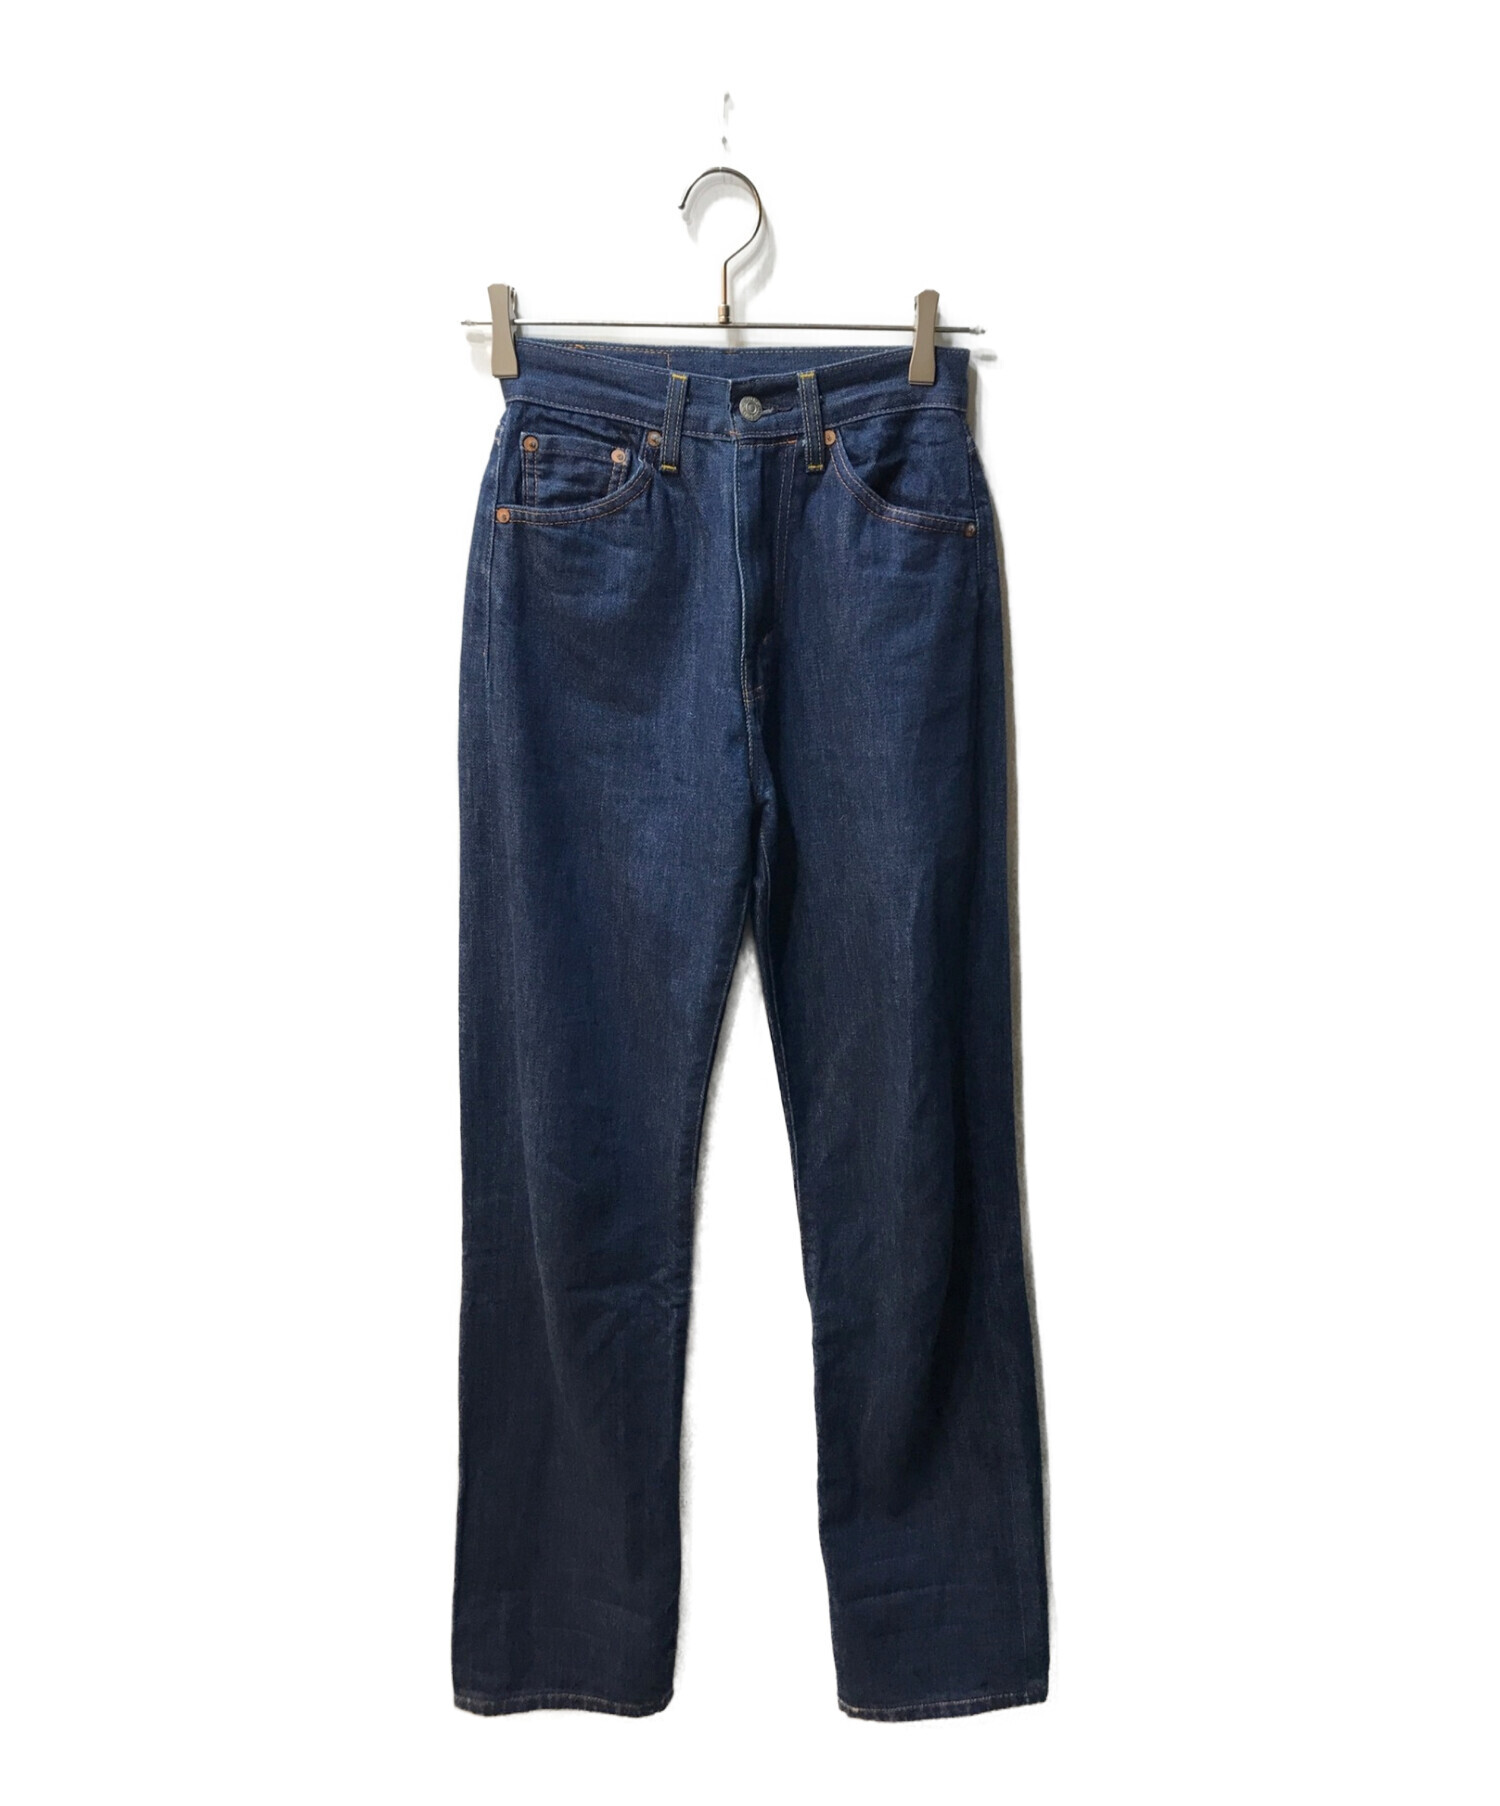 LEVI'S VINTAGE CLOTHING (リーバイスヴィンテージクロージング) モンローデニムパンツ インディゴ サイズ:W25×L34